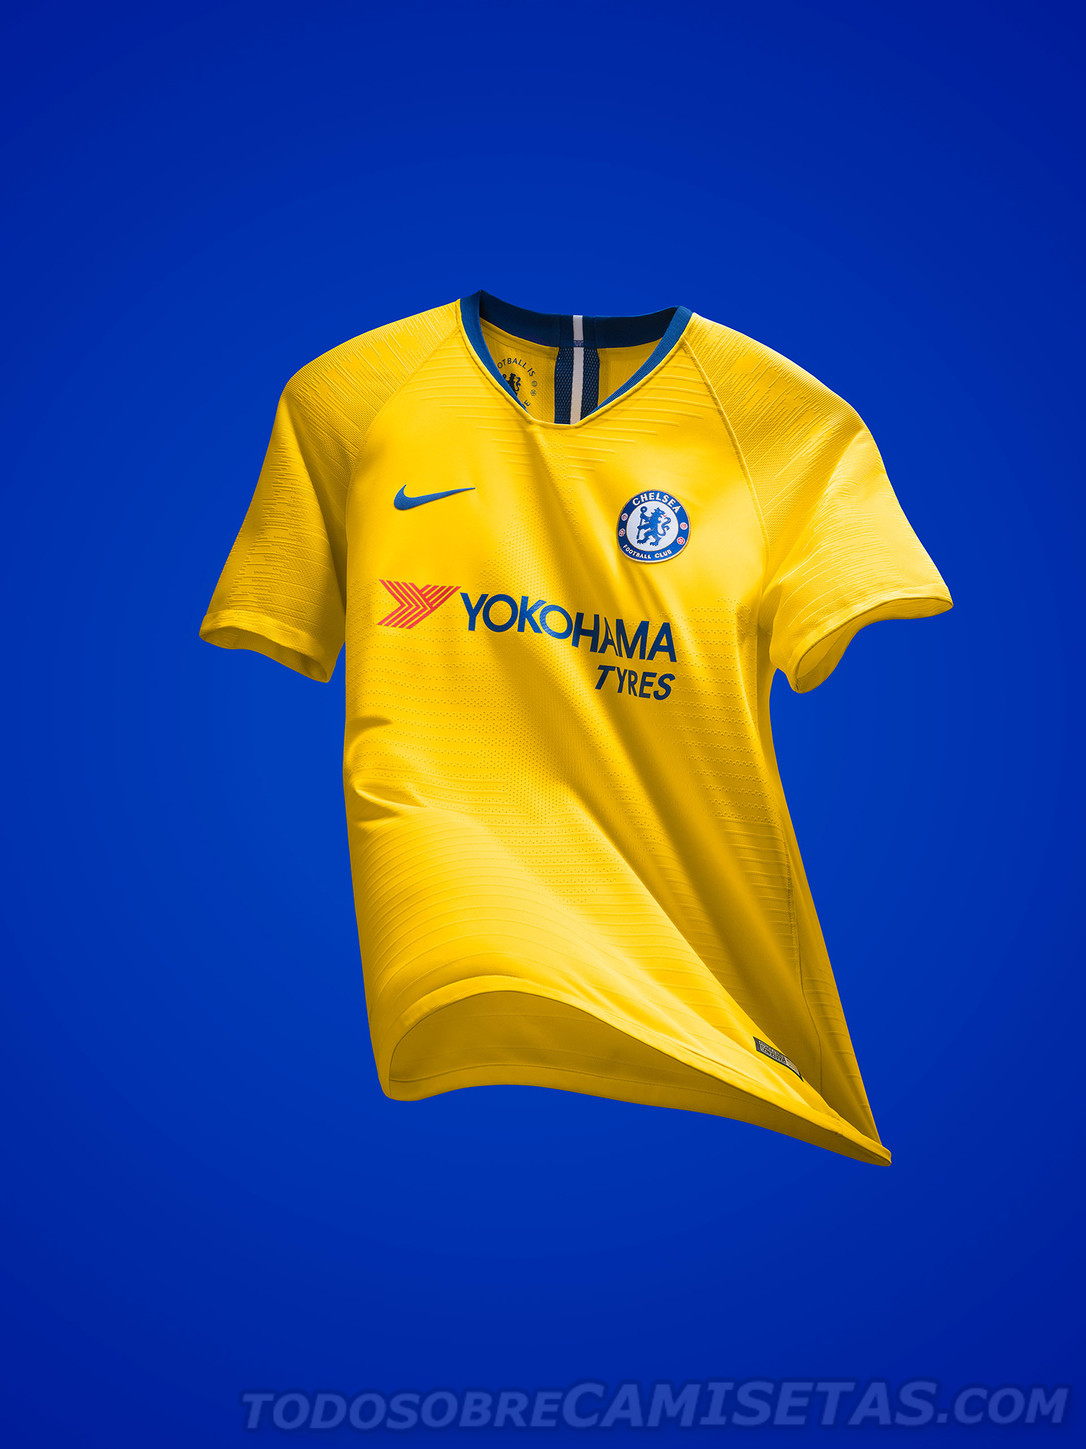 Chelsea FC Nike Away Kit 2018-19